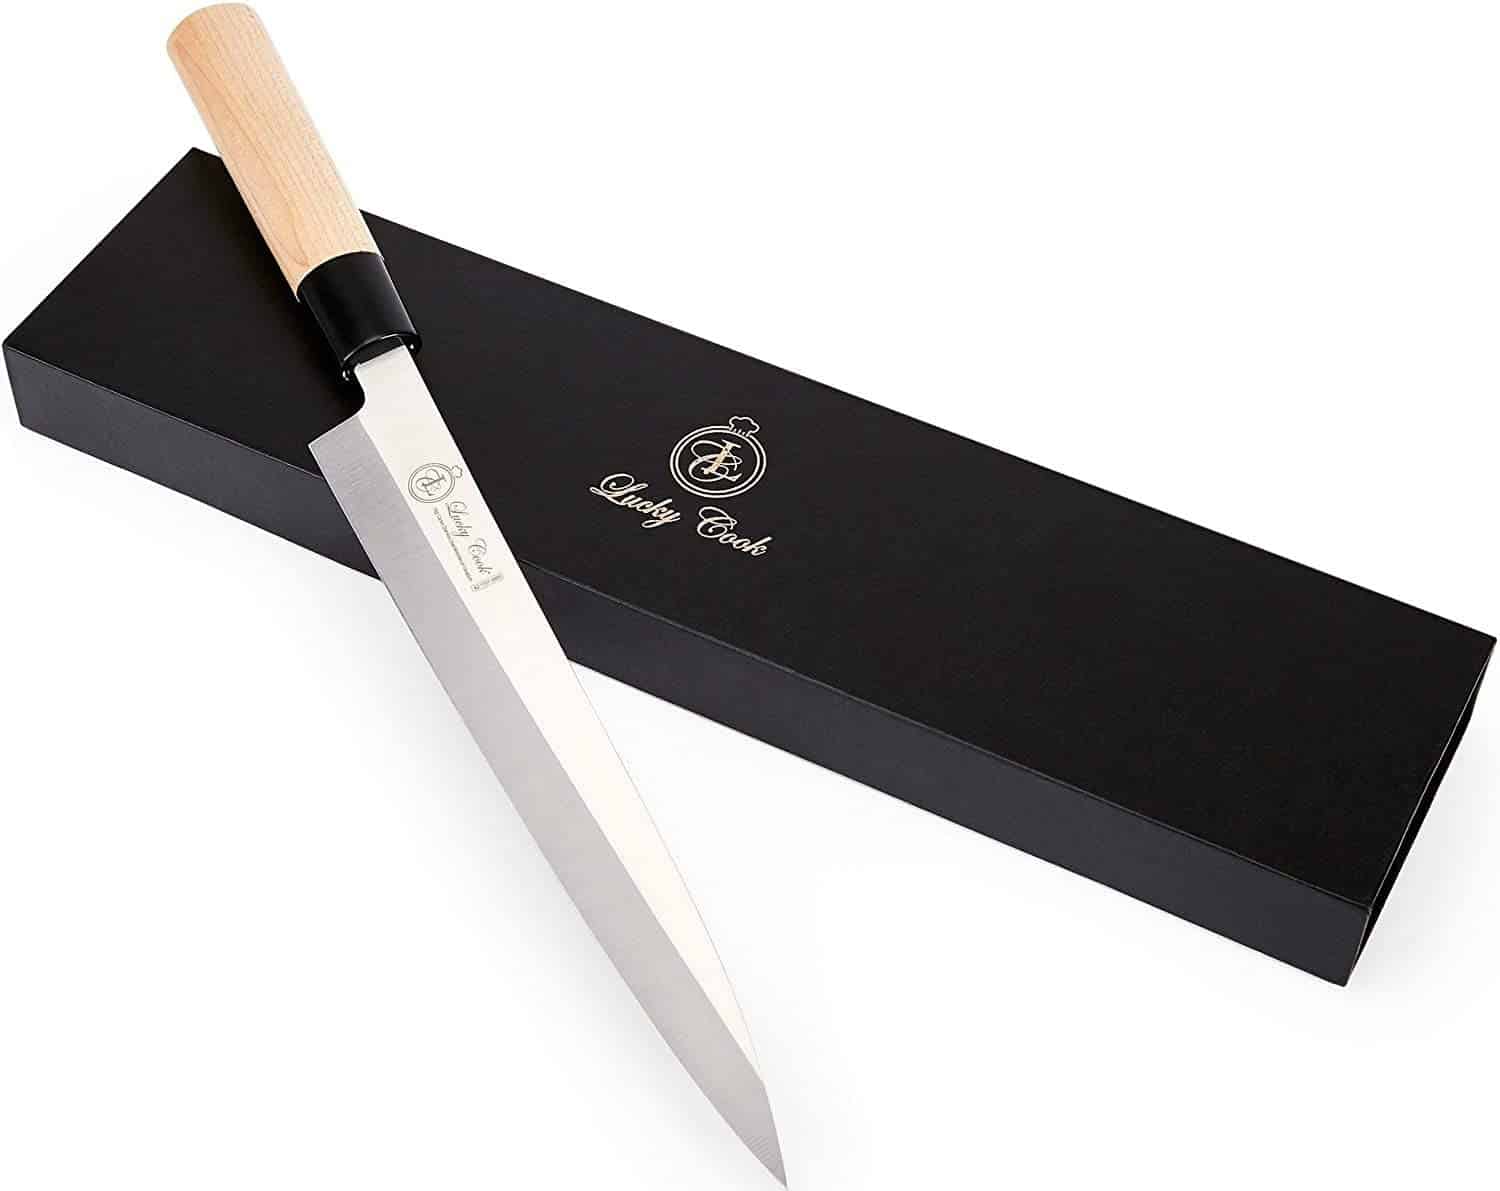 Bästa billiga sushikniven- Lucky Cook Sashimi Sushi Knife 10 Inch